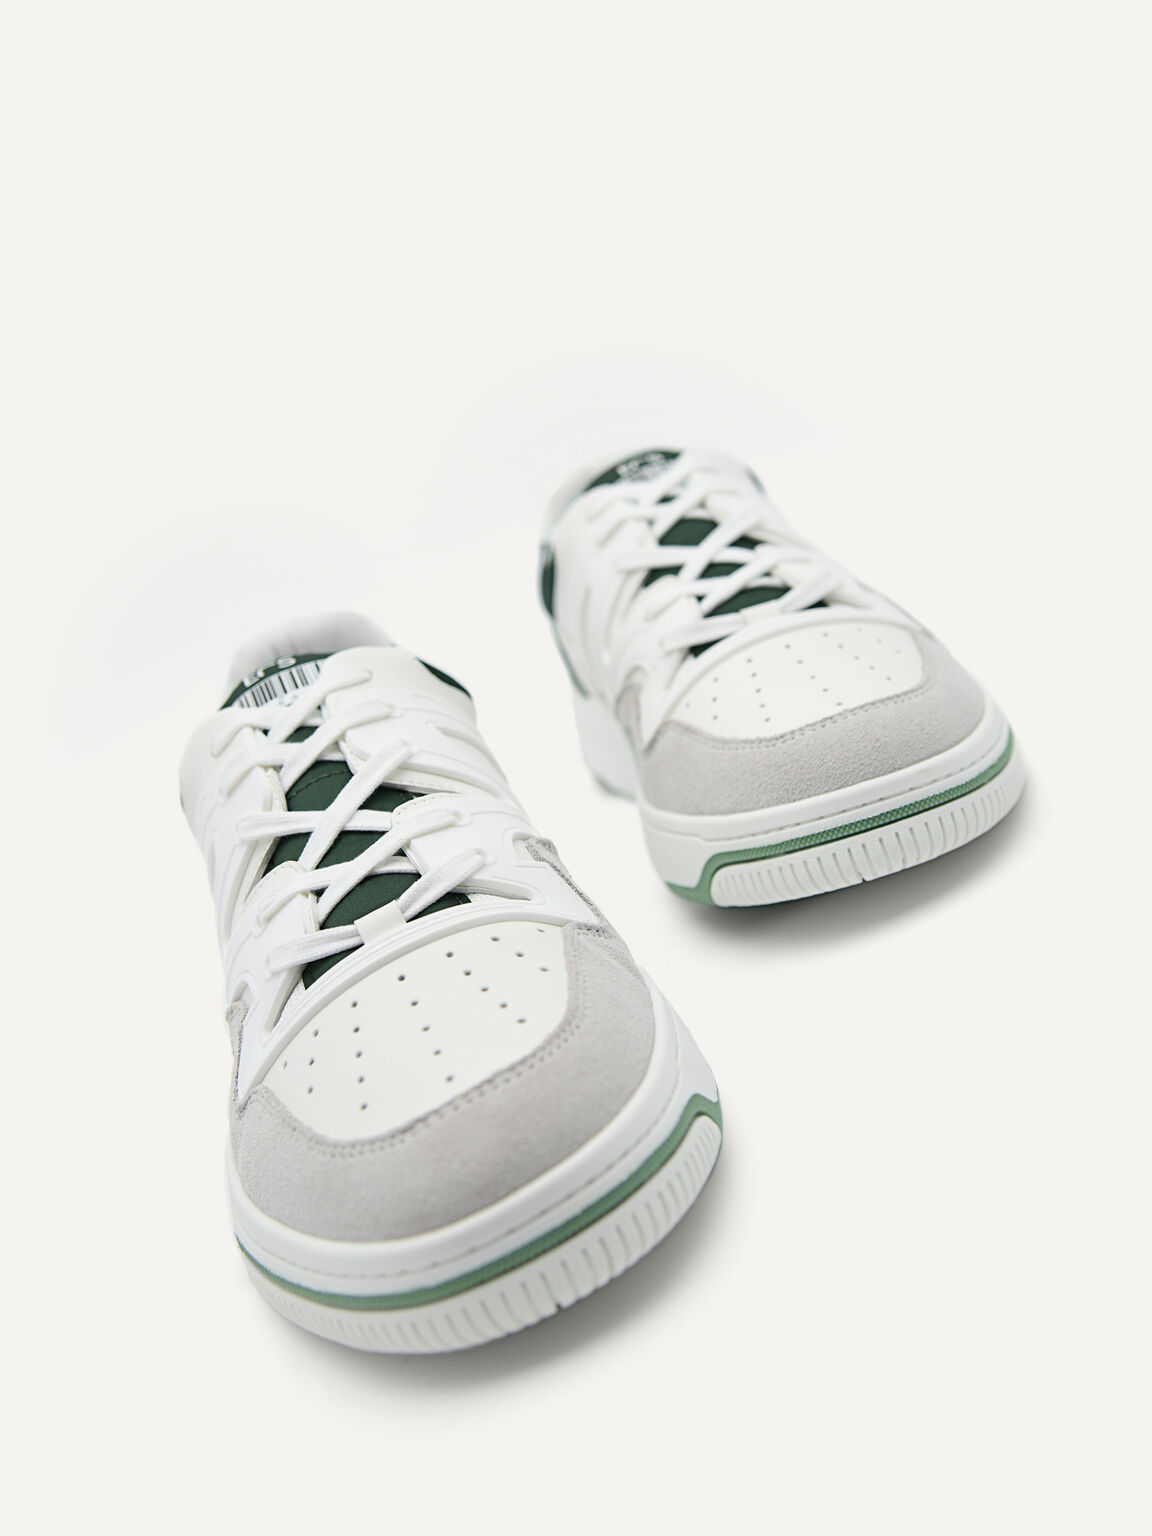 Unisex EOS Sneakers, White